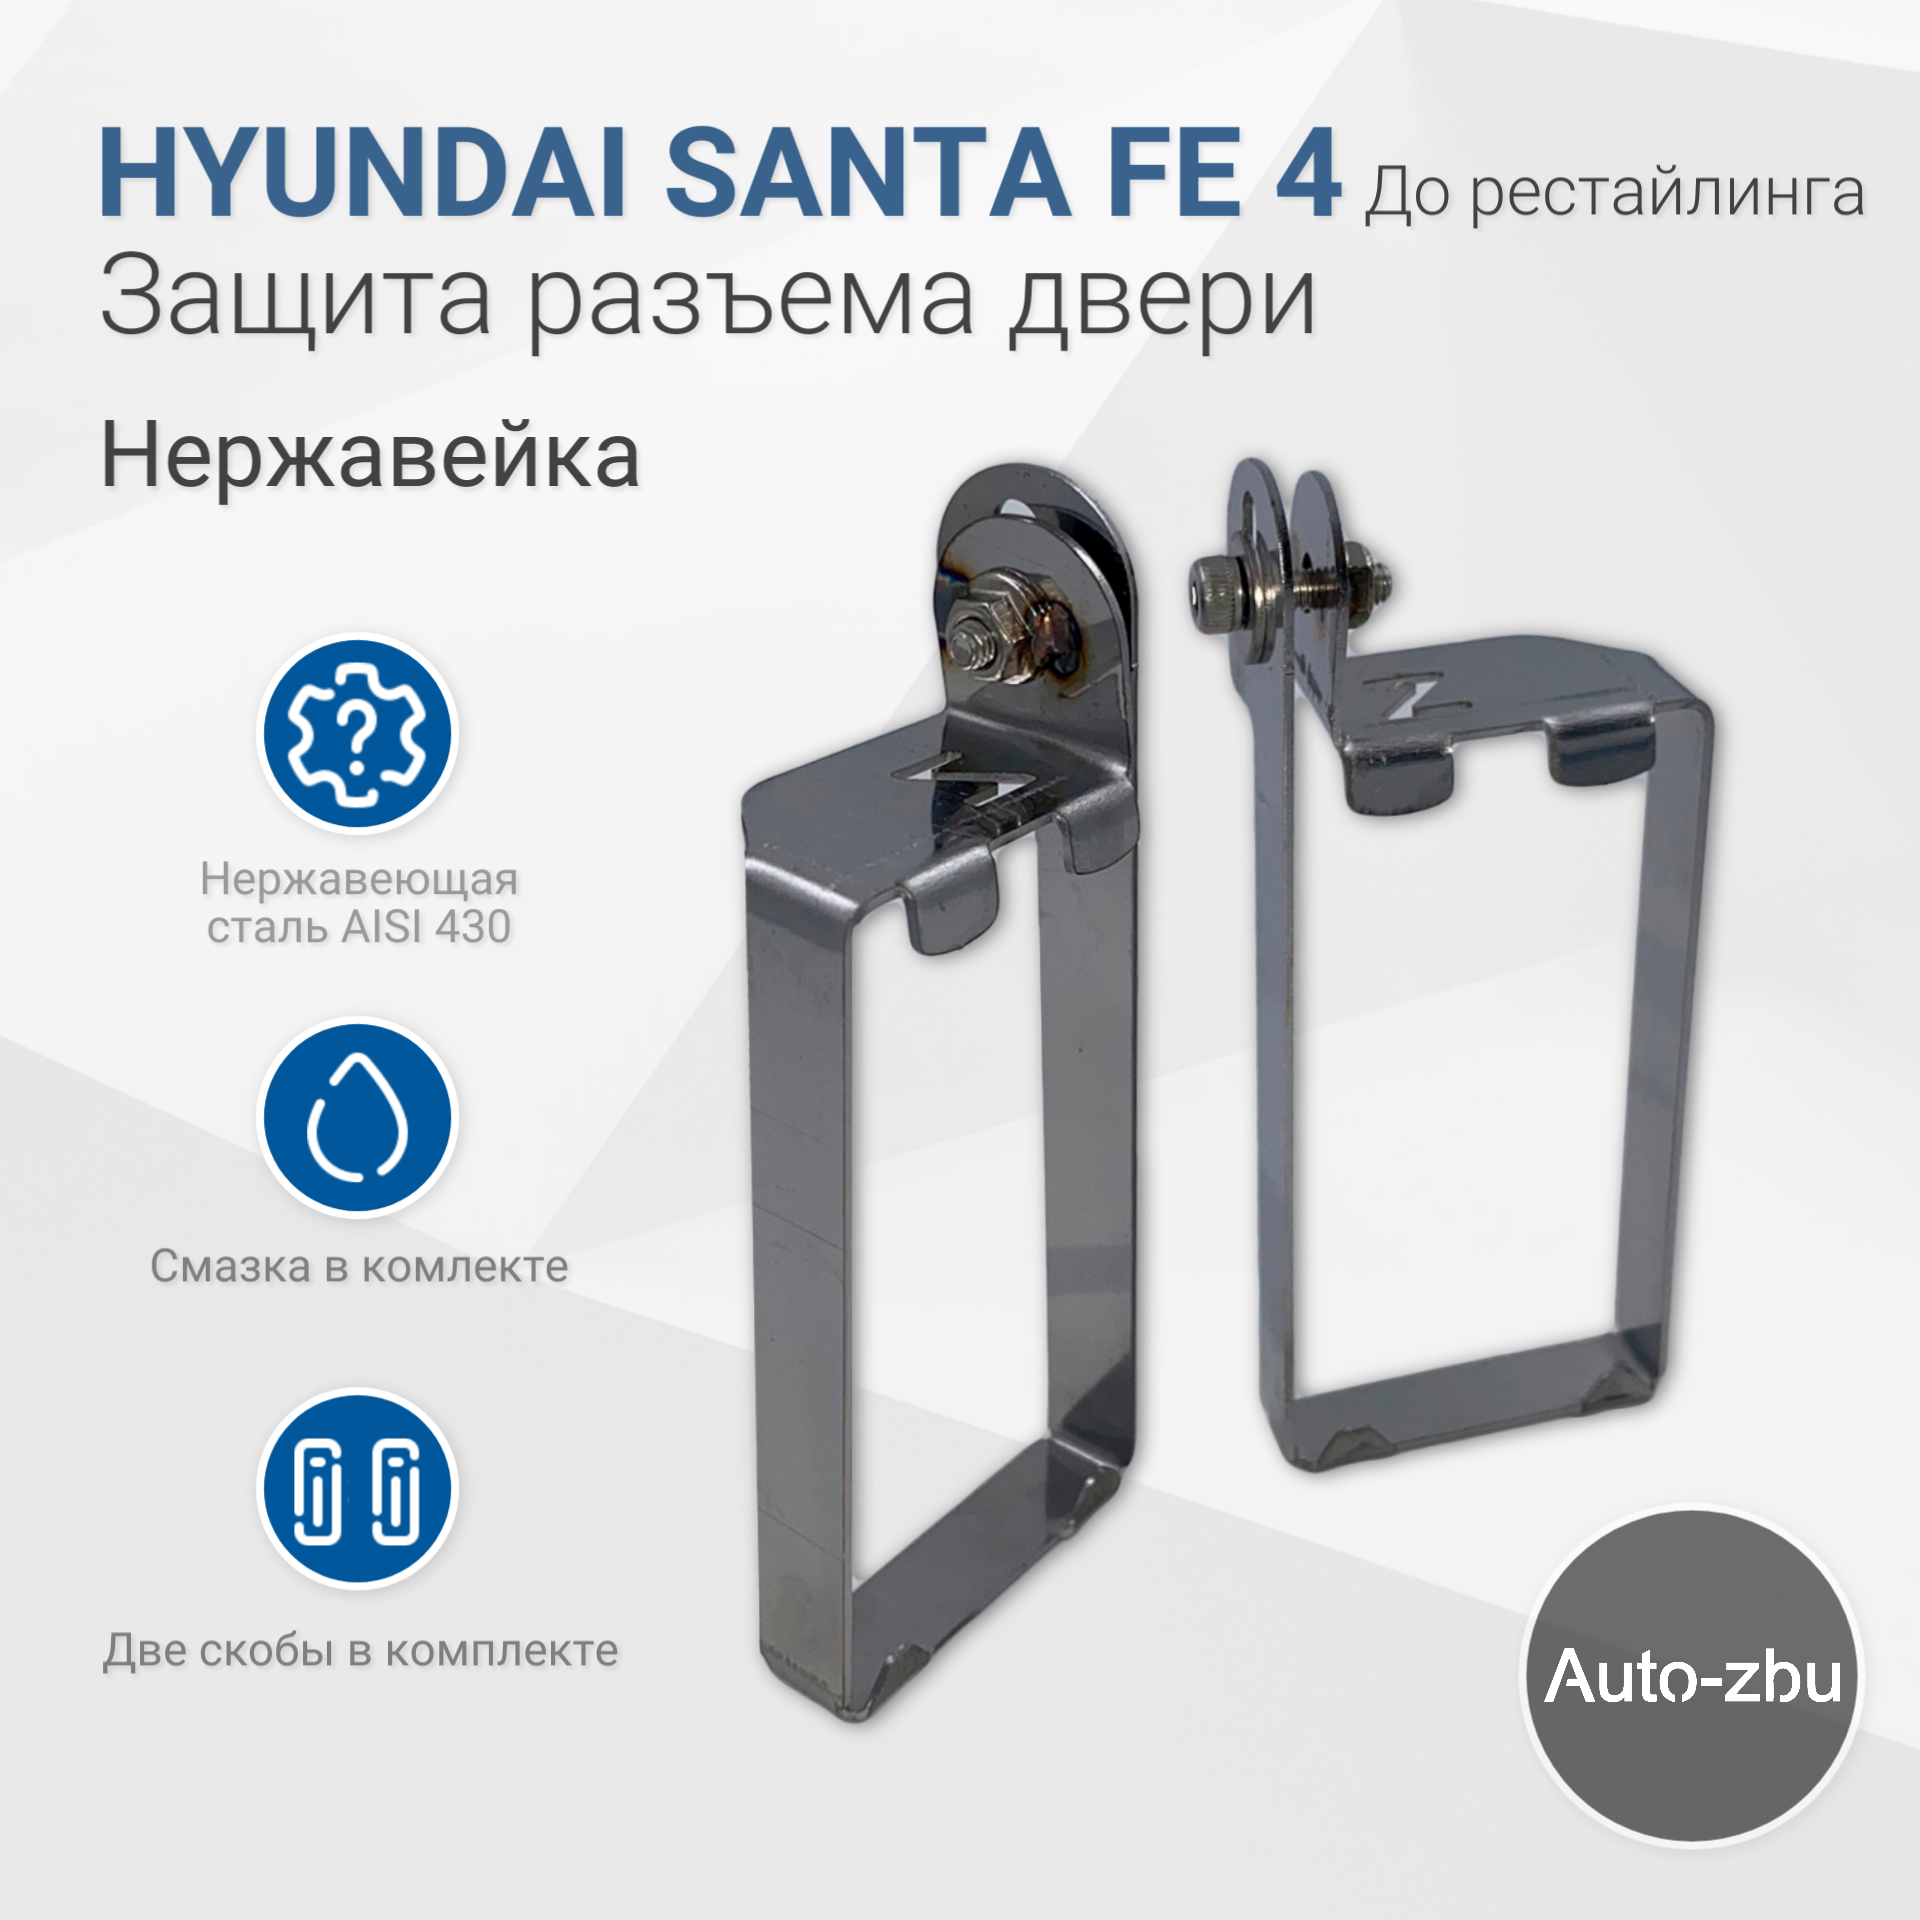 Защита разъема двери Hyundai Santa Fe 4 До рестайлинга (2018-2021) Нержавейка